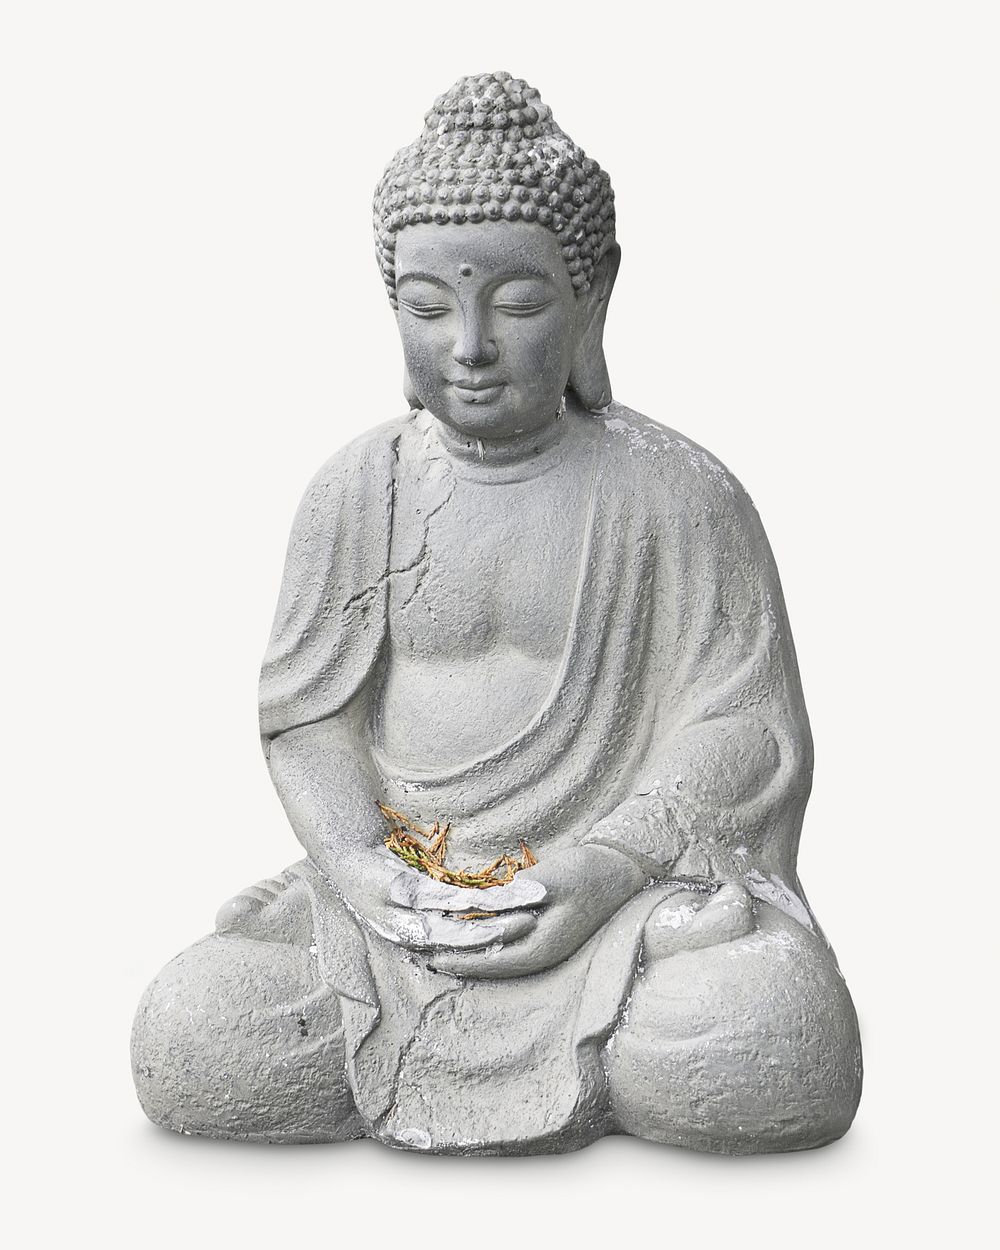 Buddha statue, isolated image